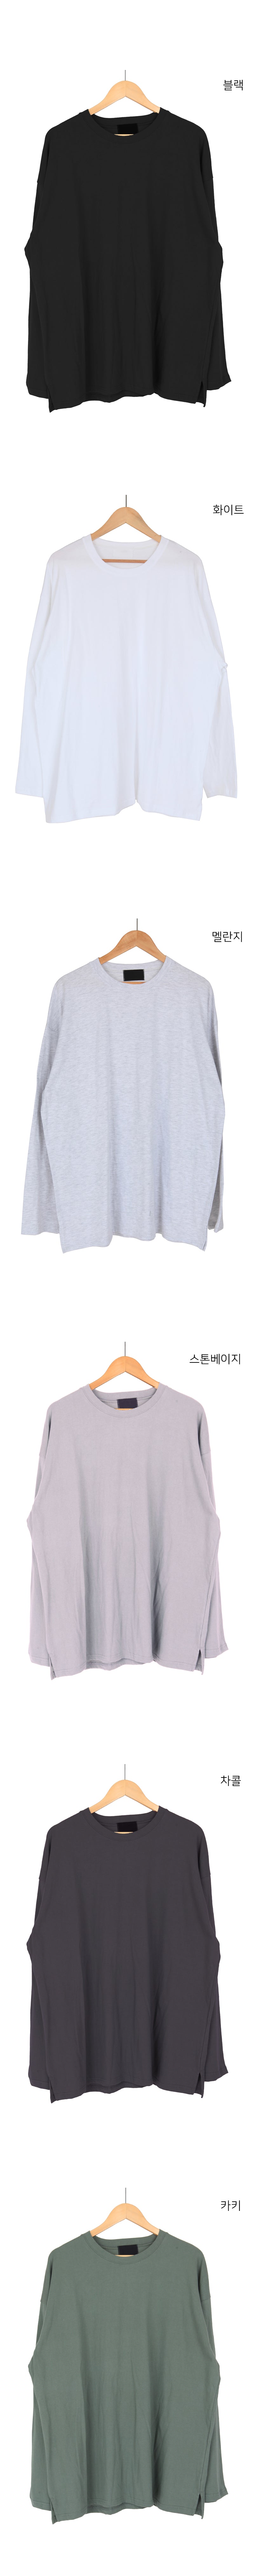 ルーズフィットベーシックロングスリーブTシャツ / Loose Fit Basic Long Sleeve T-shirt